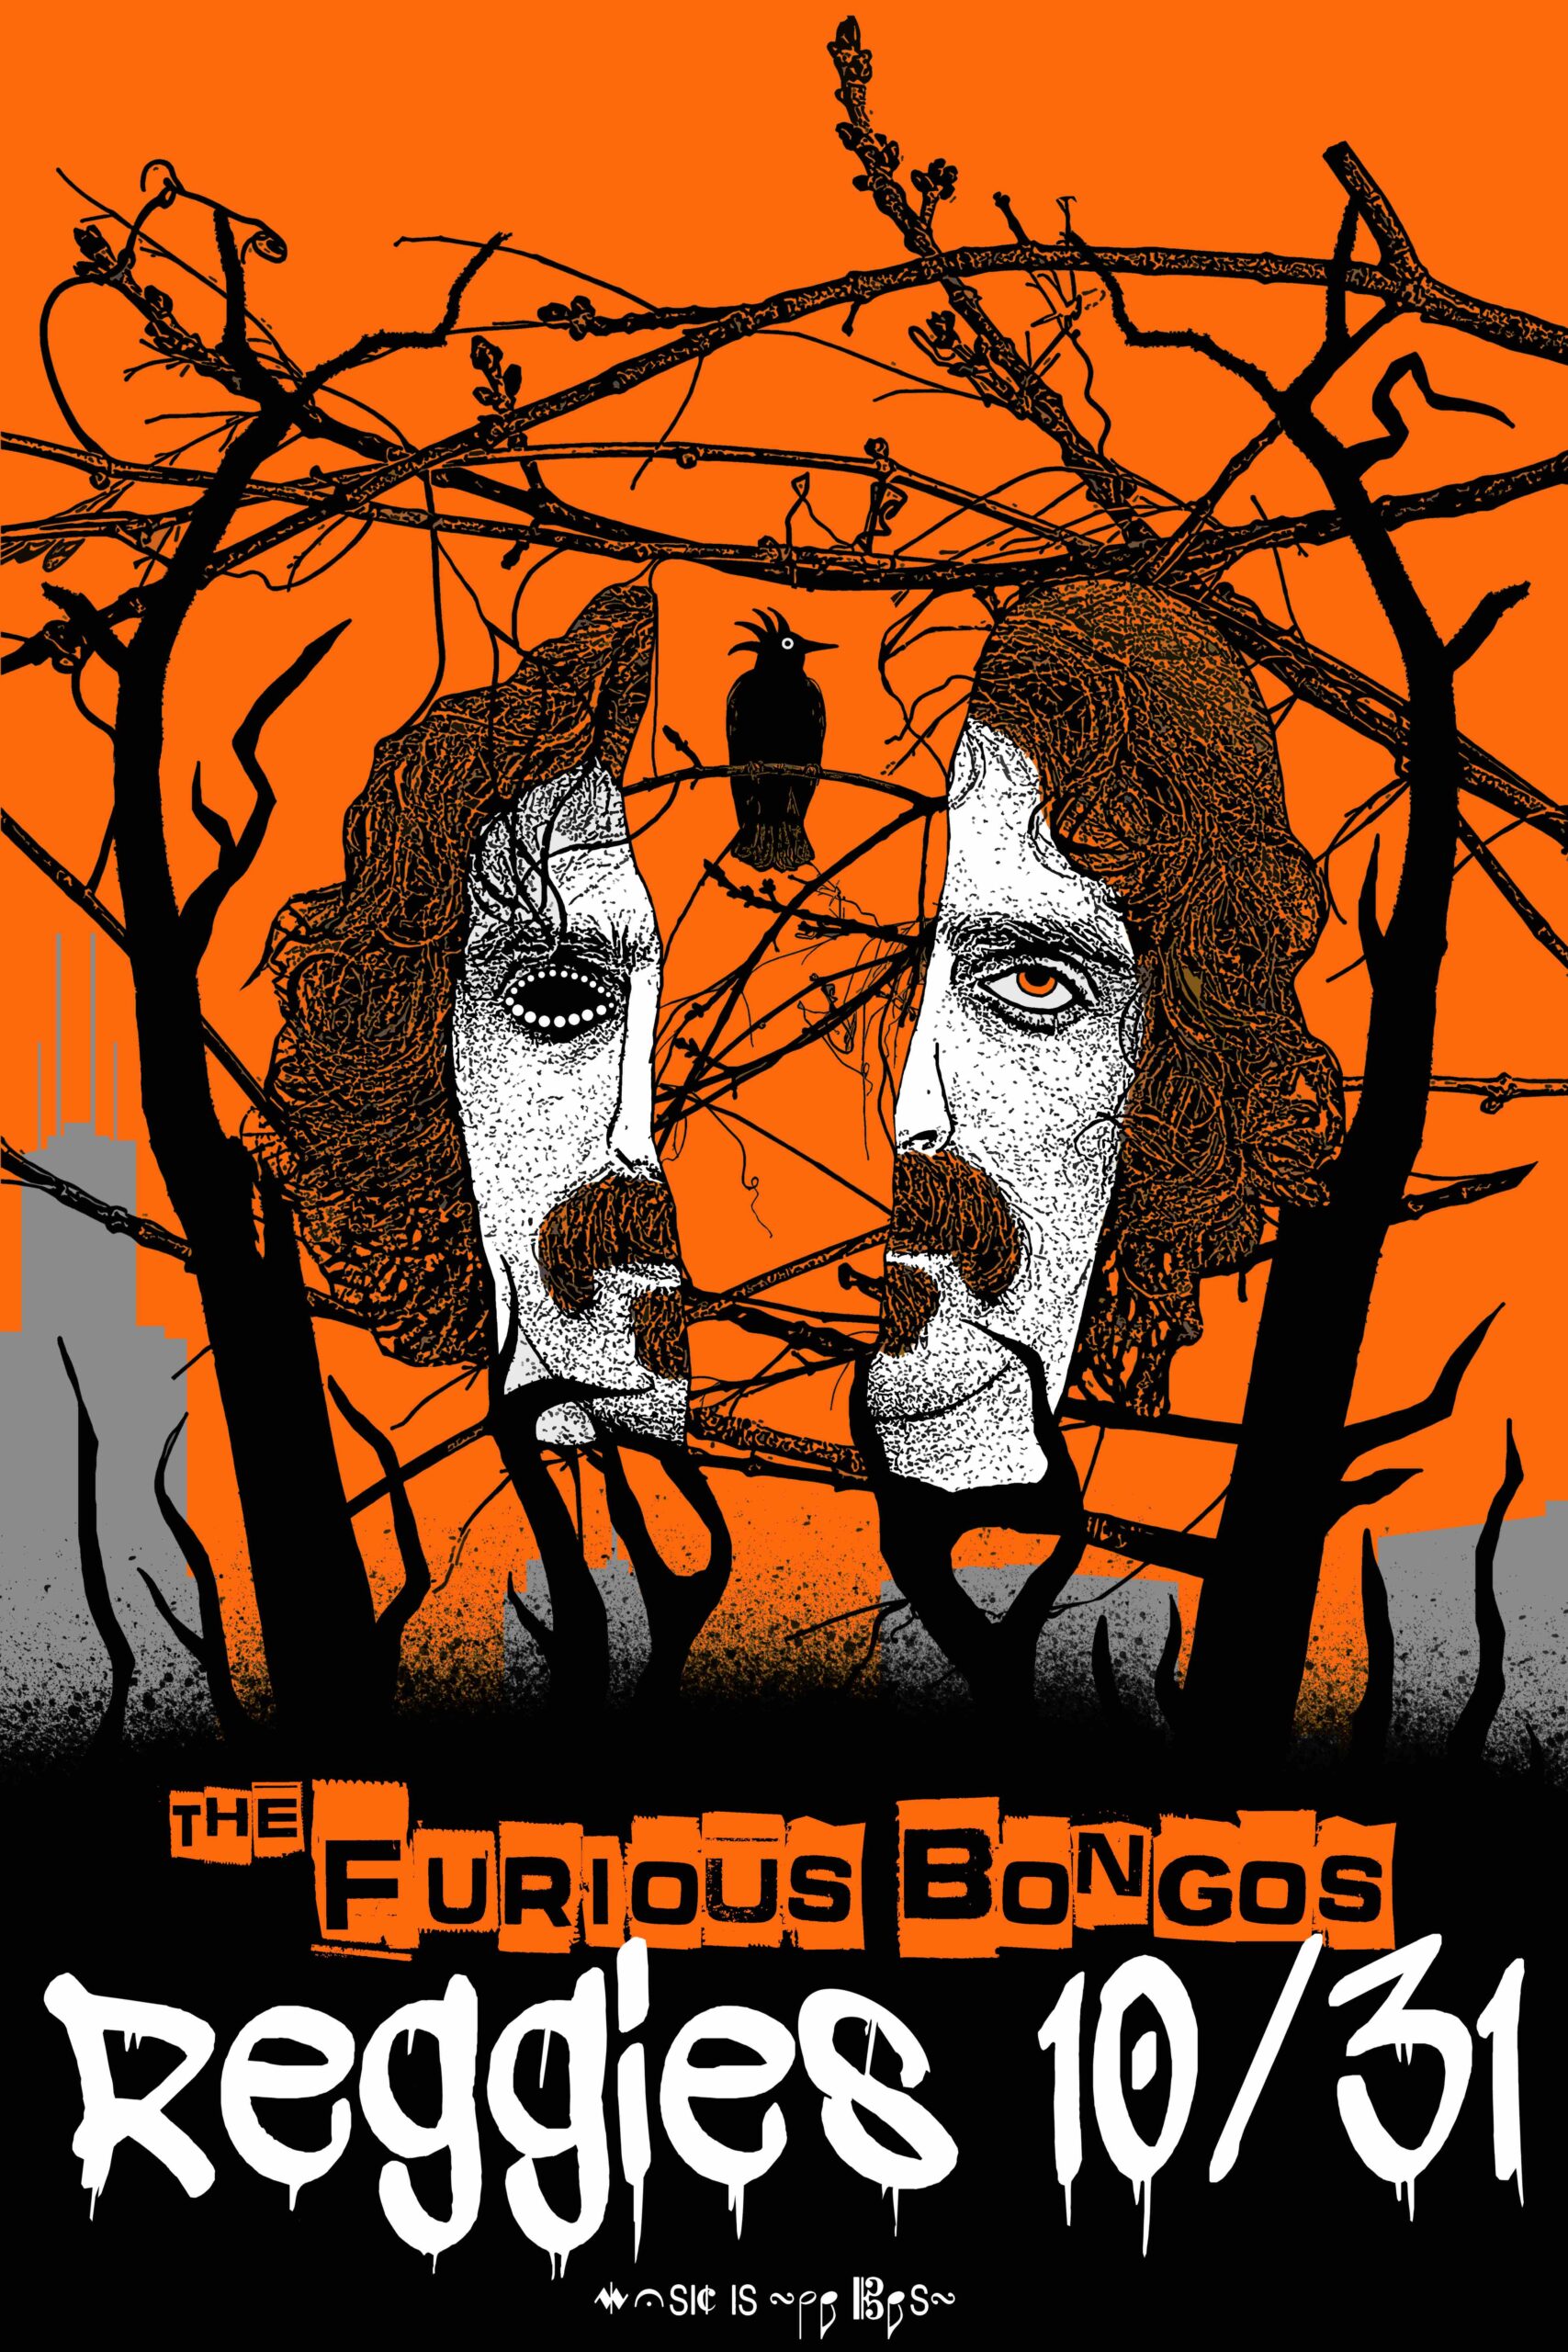 The Furious Bongos